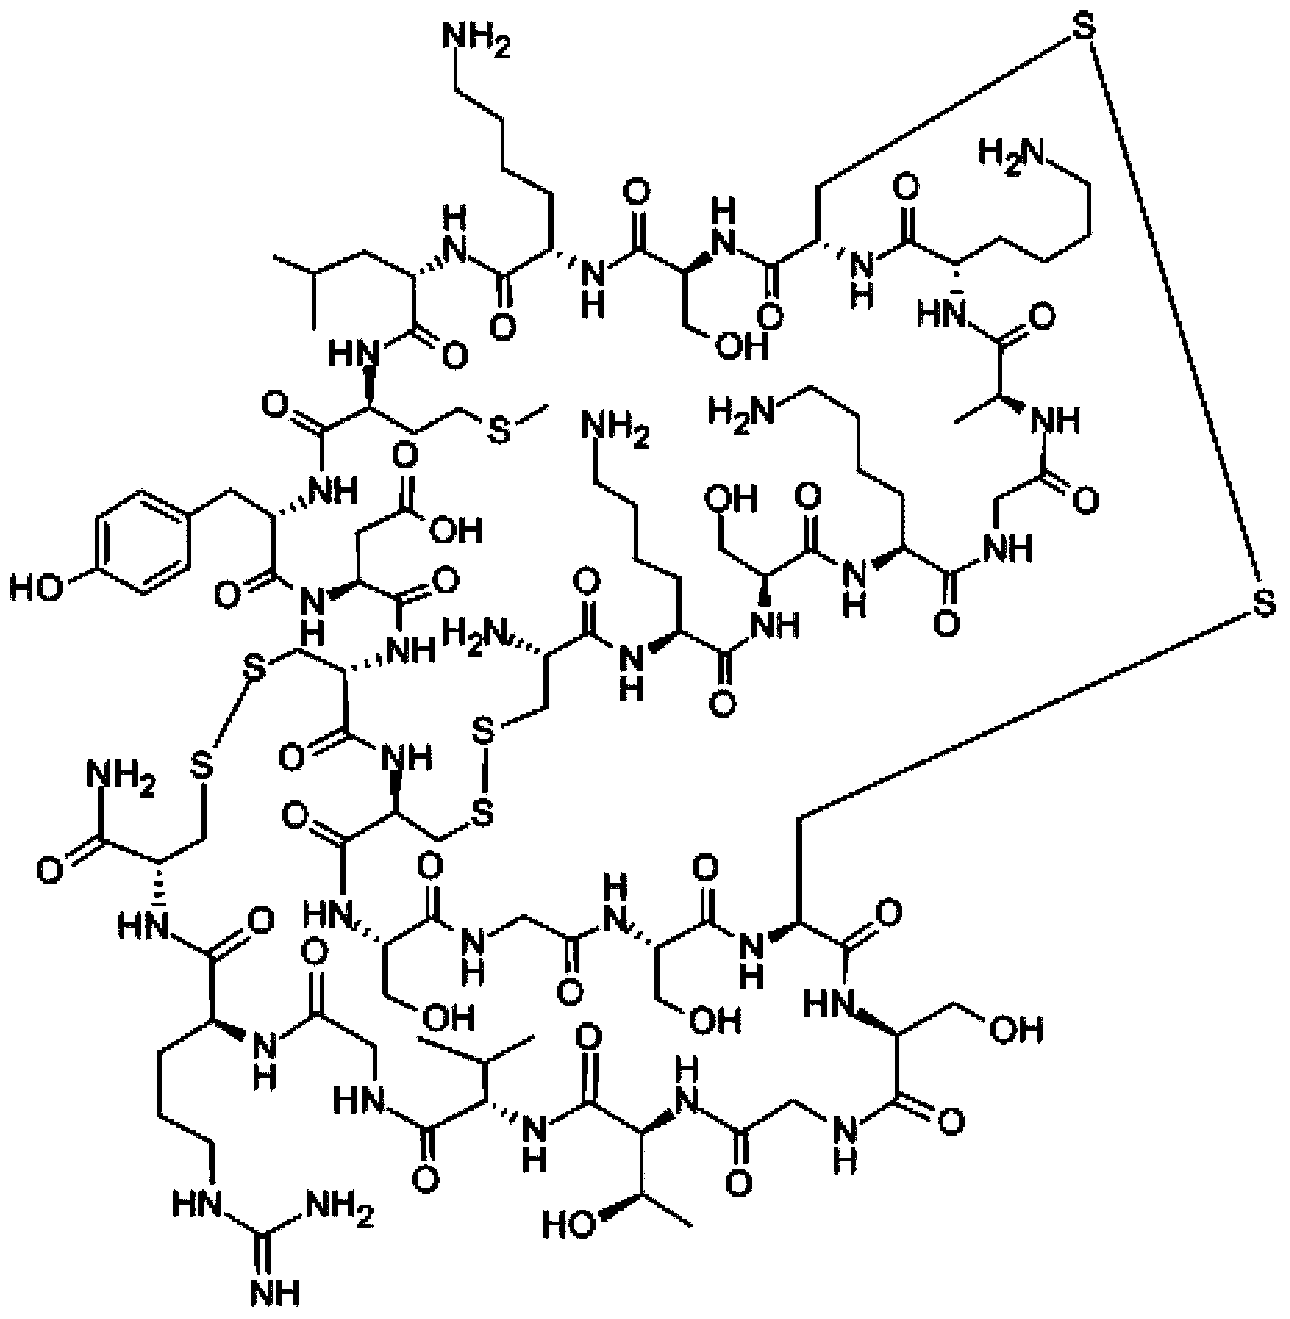 Method for synthesizing leconotide